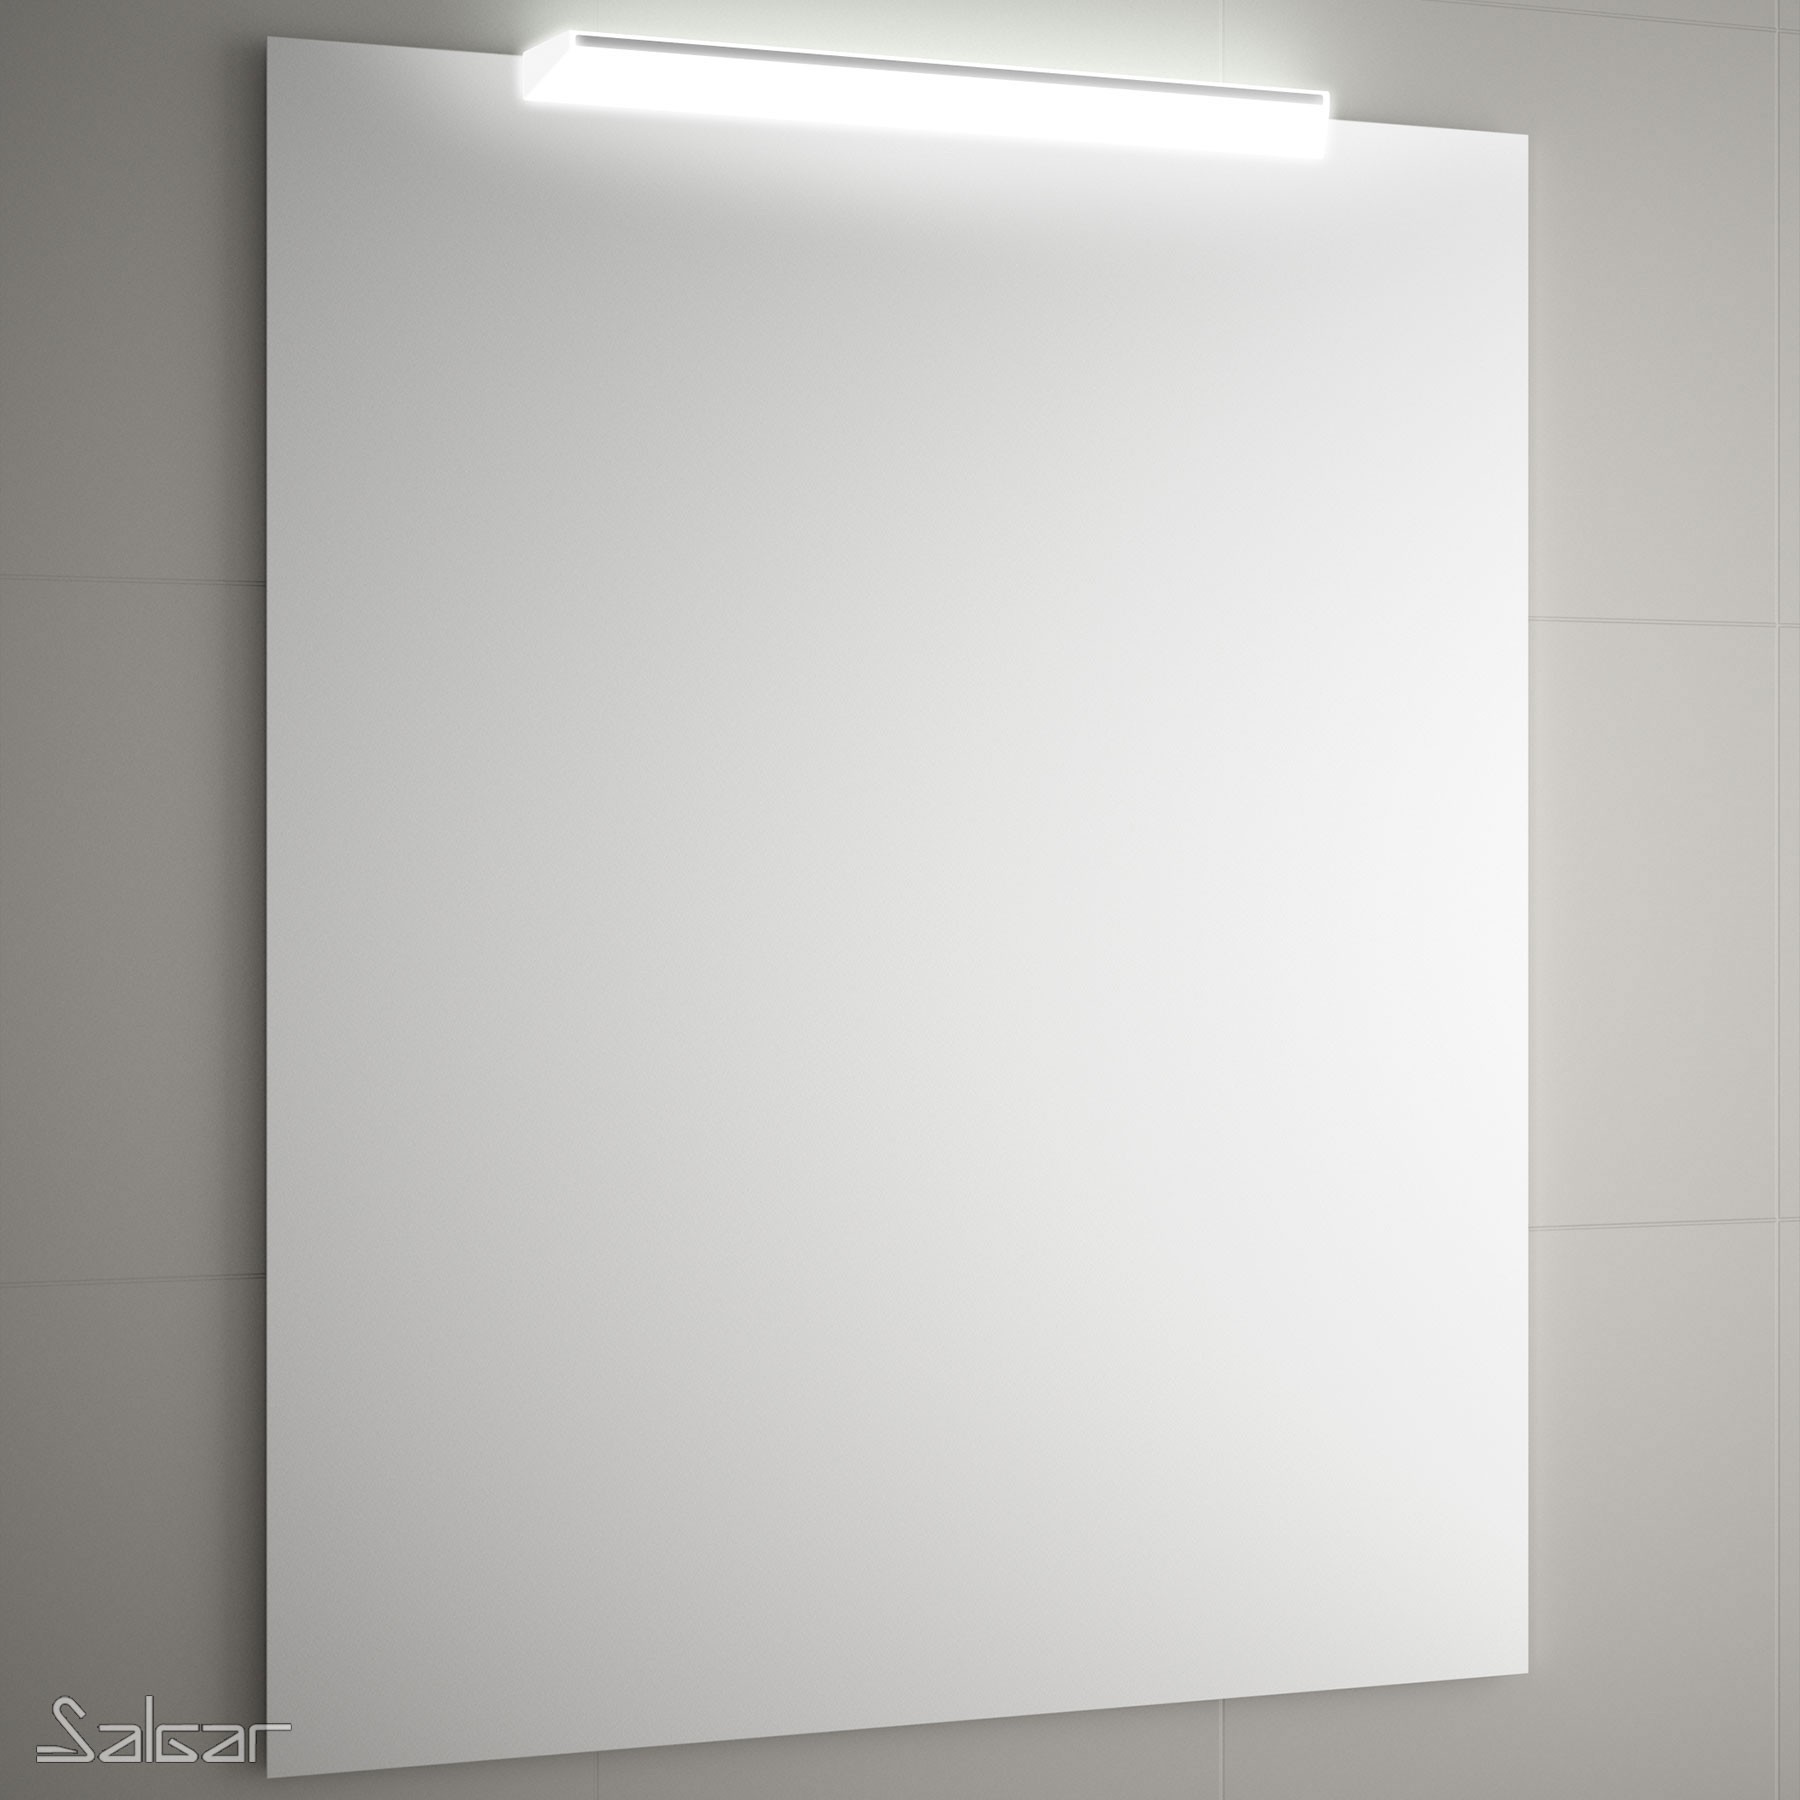 Applique de salle de bains Gamme PRO SALGAR BOREAL 700 blanc luminaire led (10 W.) IP 44 (751lm) (5700 K) fixation - Réf:84124